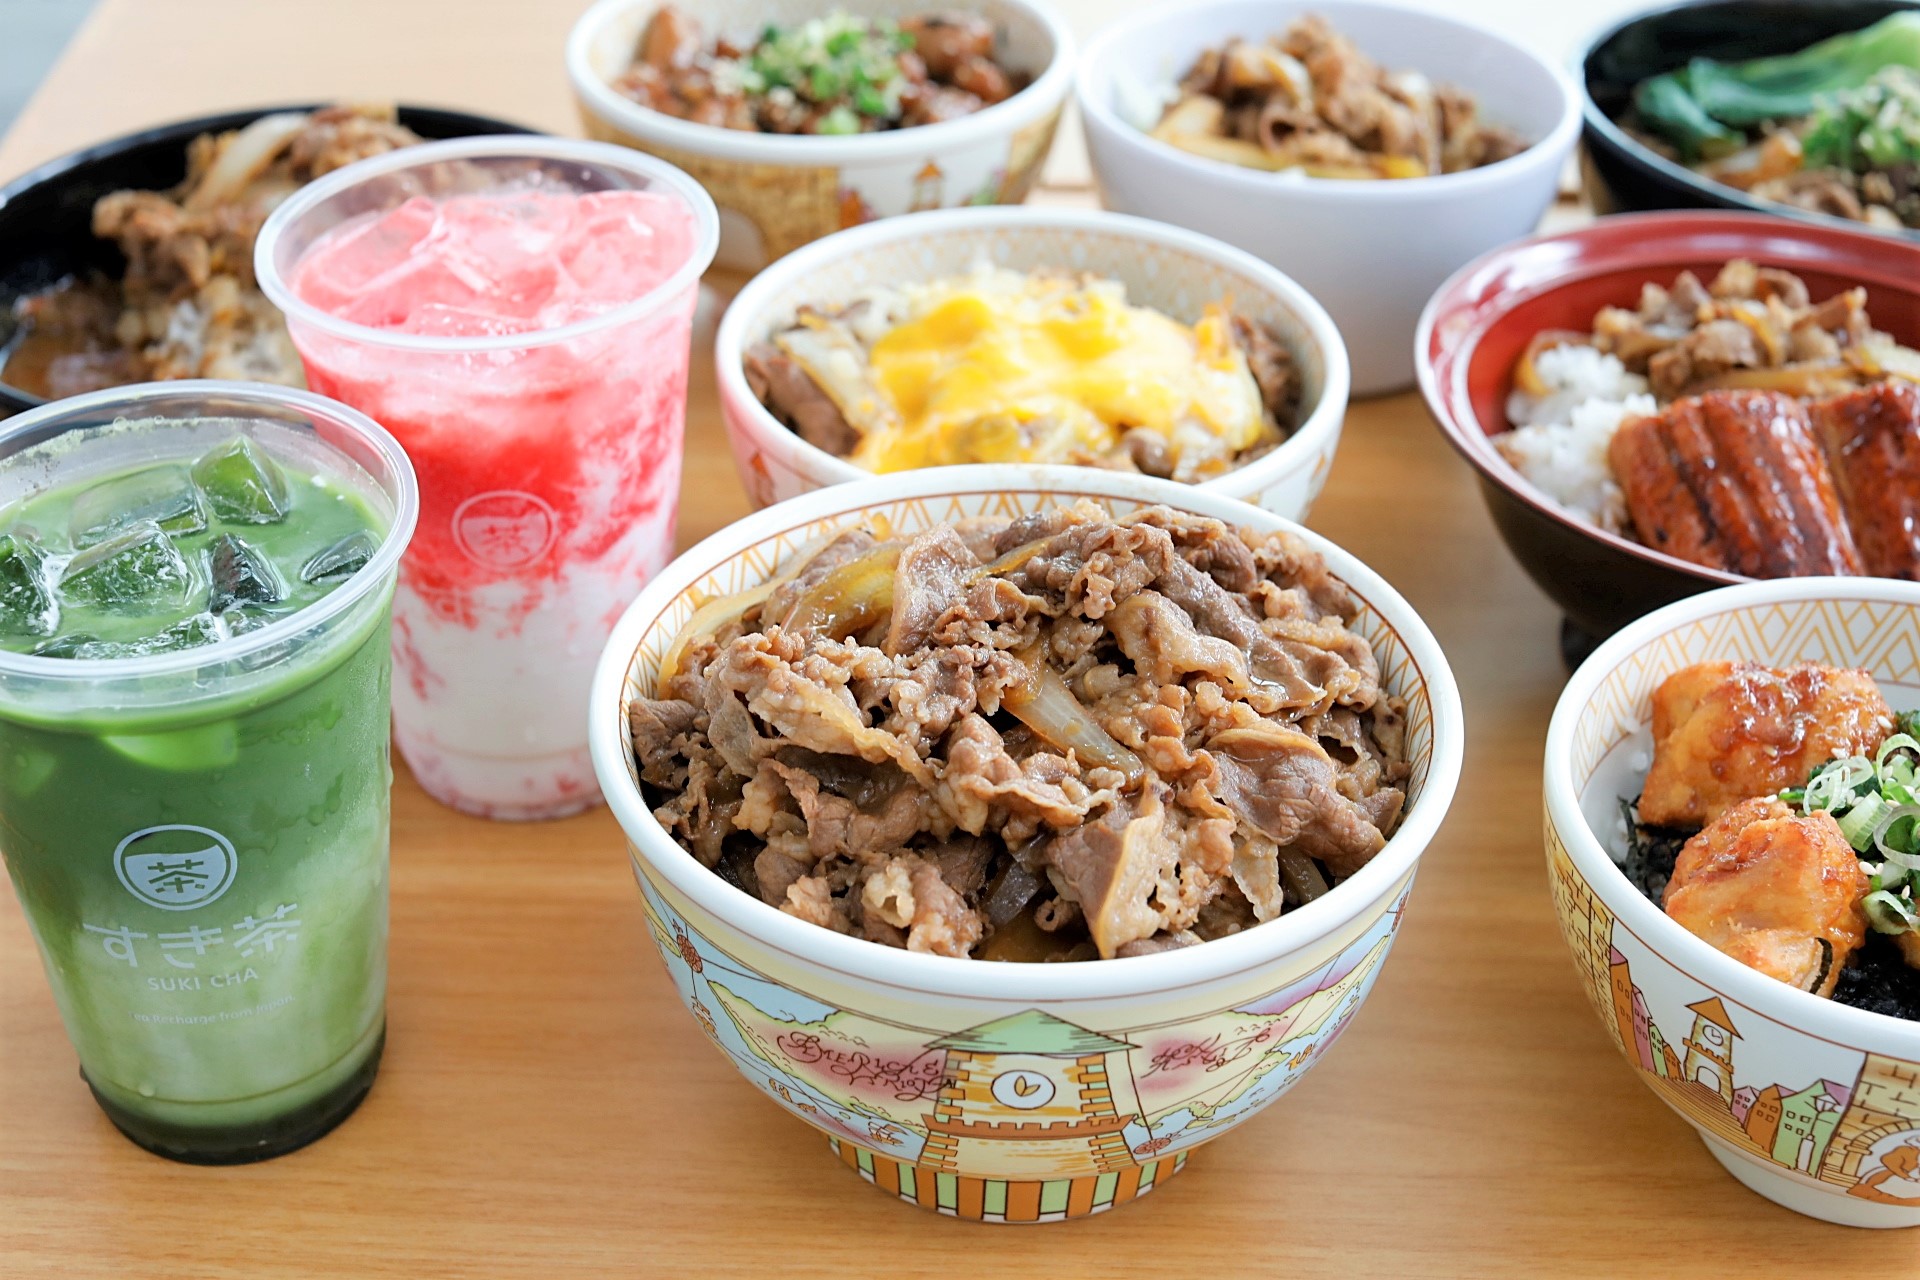 SUKIYA Singapore – Japan's Leading Gyudon Restaurant Arrives At Suntec  City, $4.20 For Oishii Beef Bowl - DanielFoodDiary.com